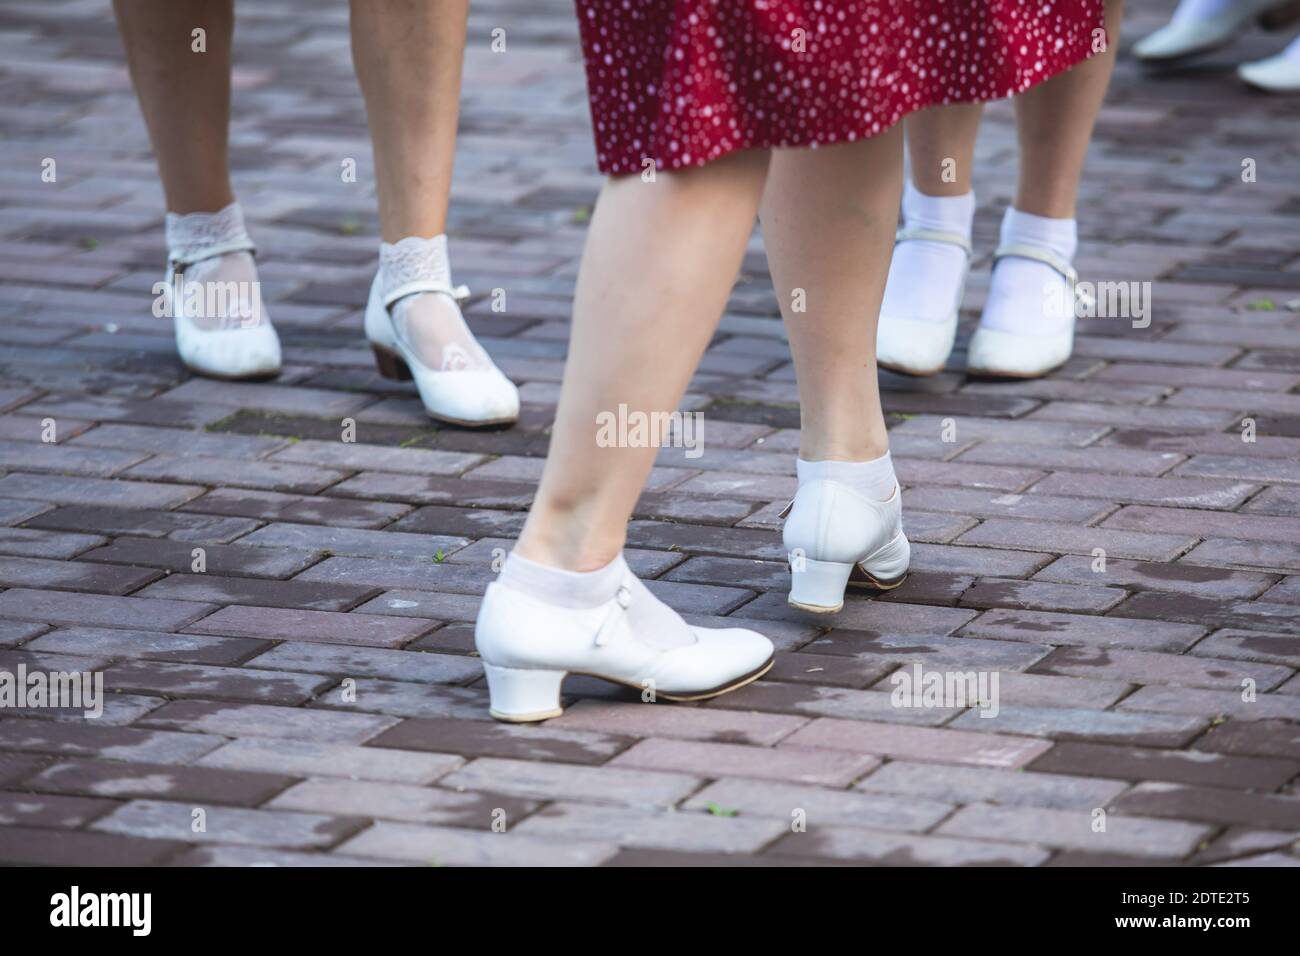 jóvenes con vestidos de punto polka vintage bailando en el parque de la ciudad, vista de los mismos zapatos de baile negro y calcetines blancos, swing femenino de jazz